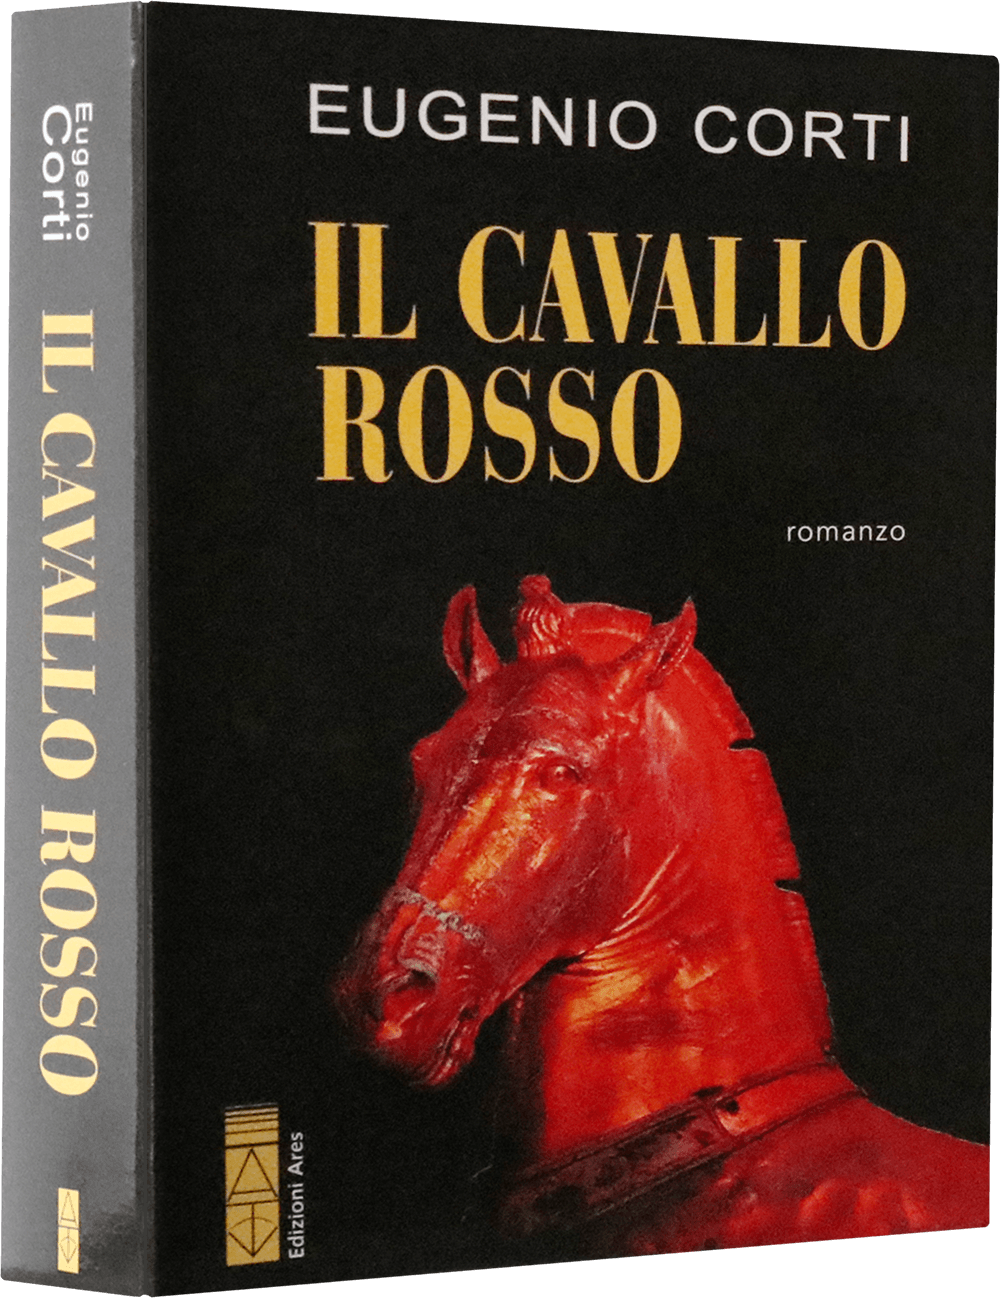 Eugenio Corti - Il cavallo rosso